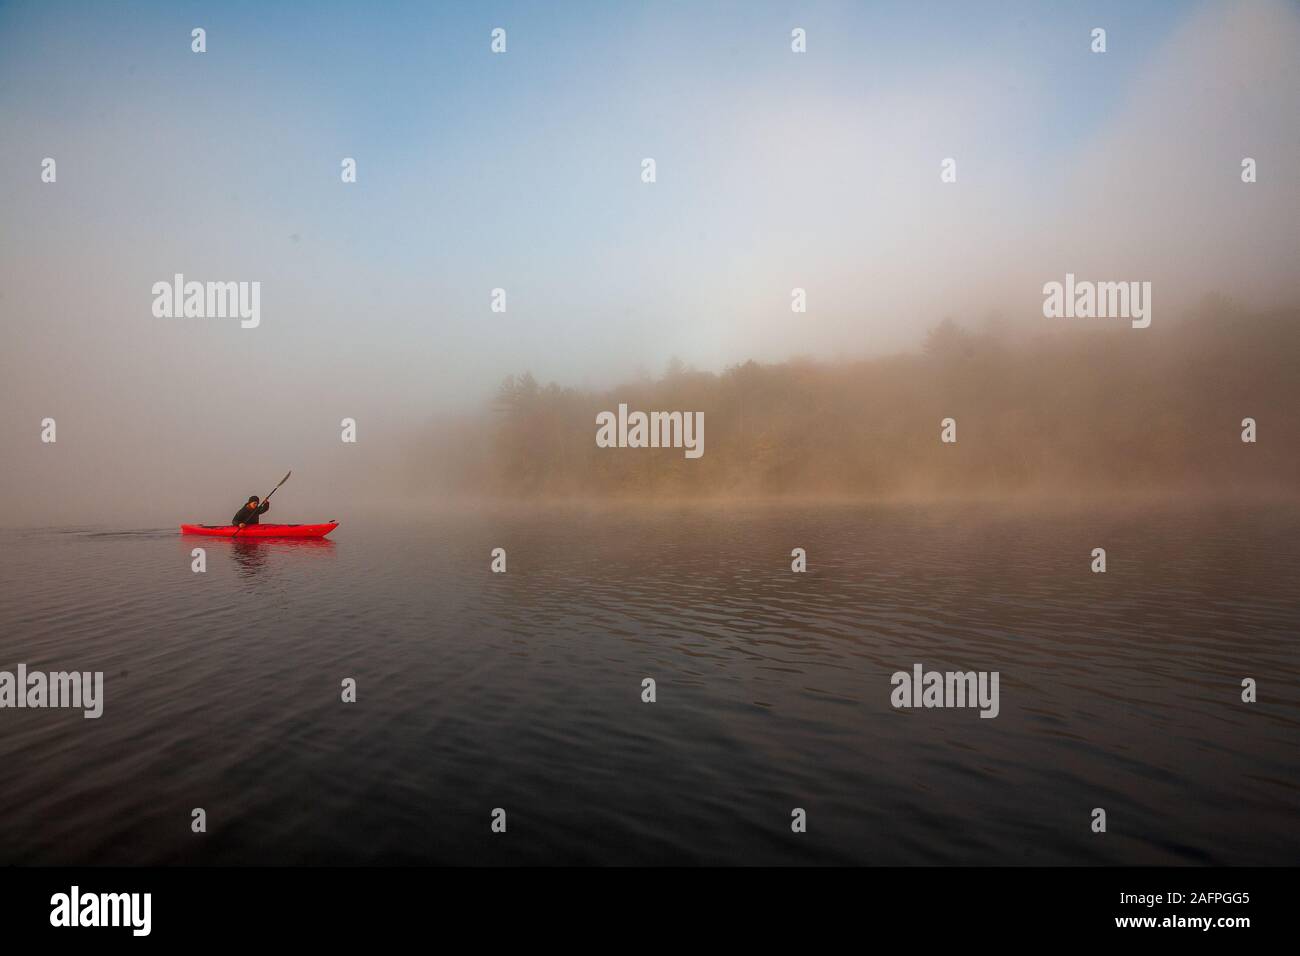 Paddling on a misty pond. Stock Photo